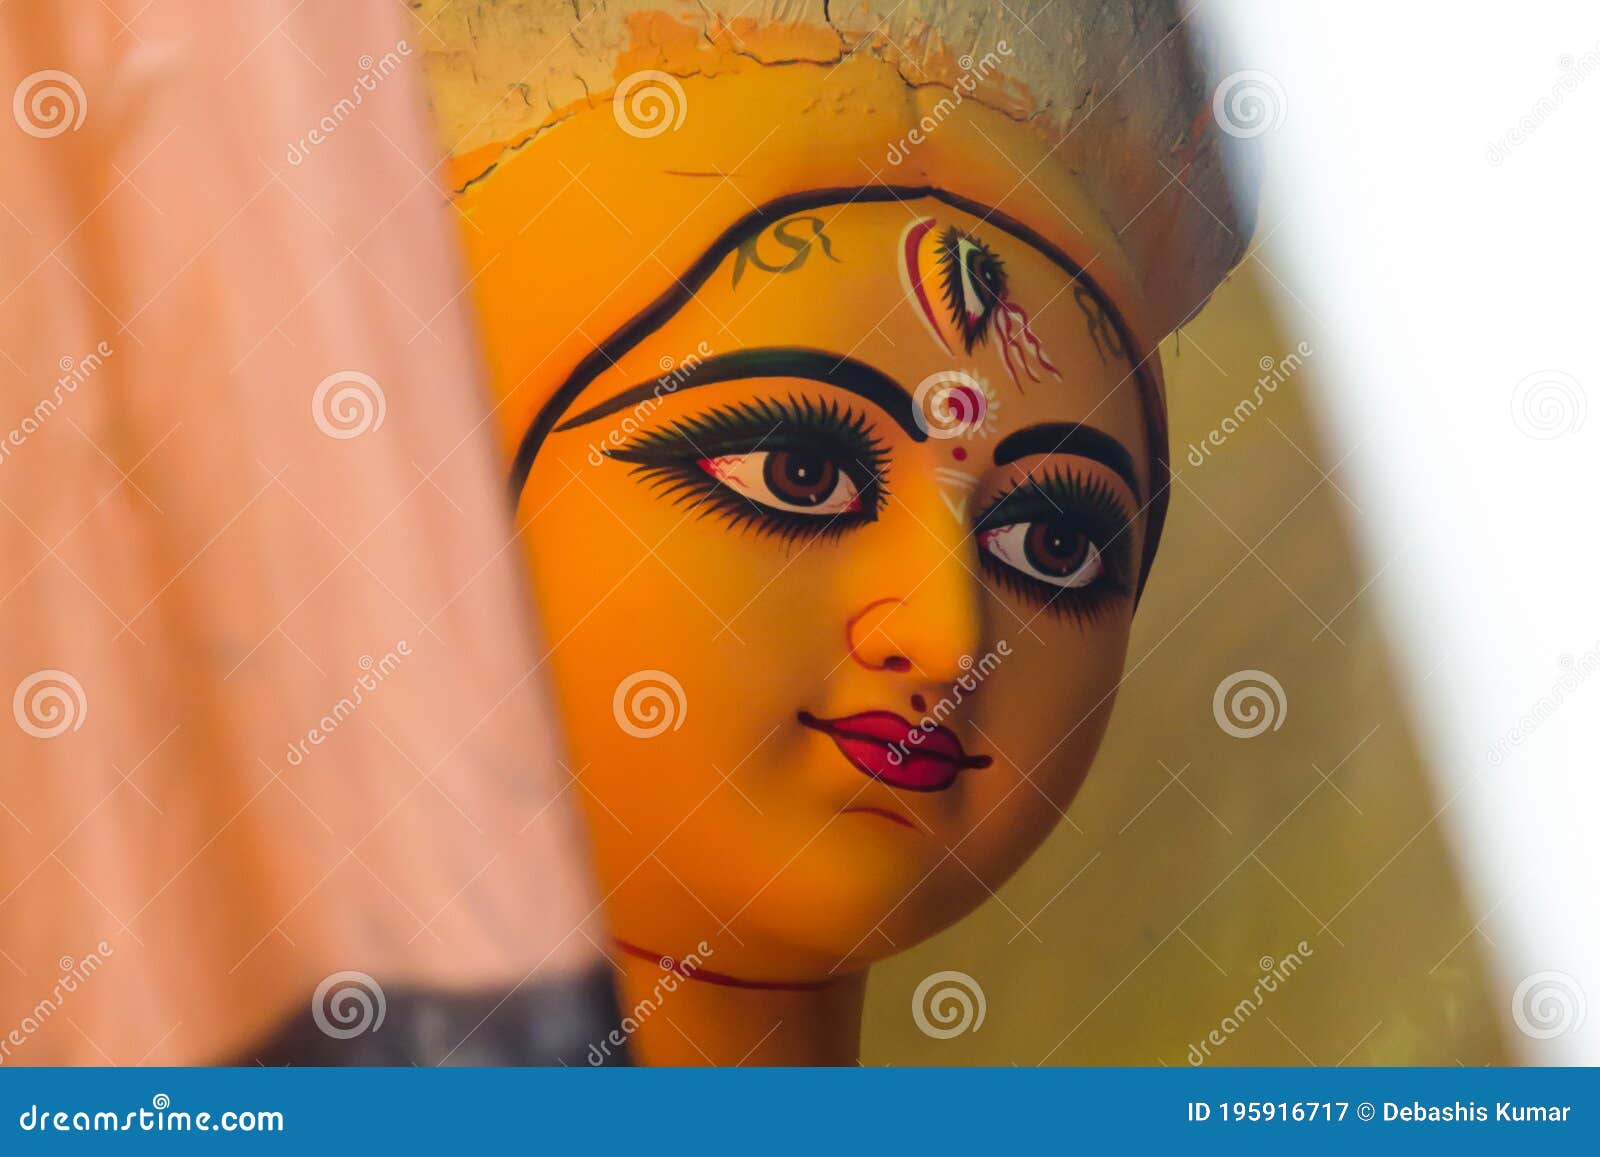 Beautiful Face of Hindu Goddess Durga Stock Image - Image of asia ...